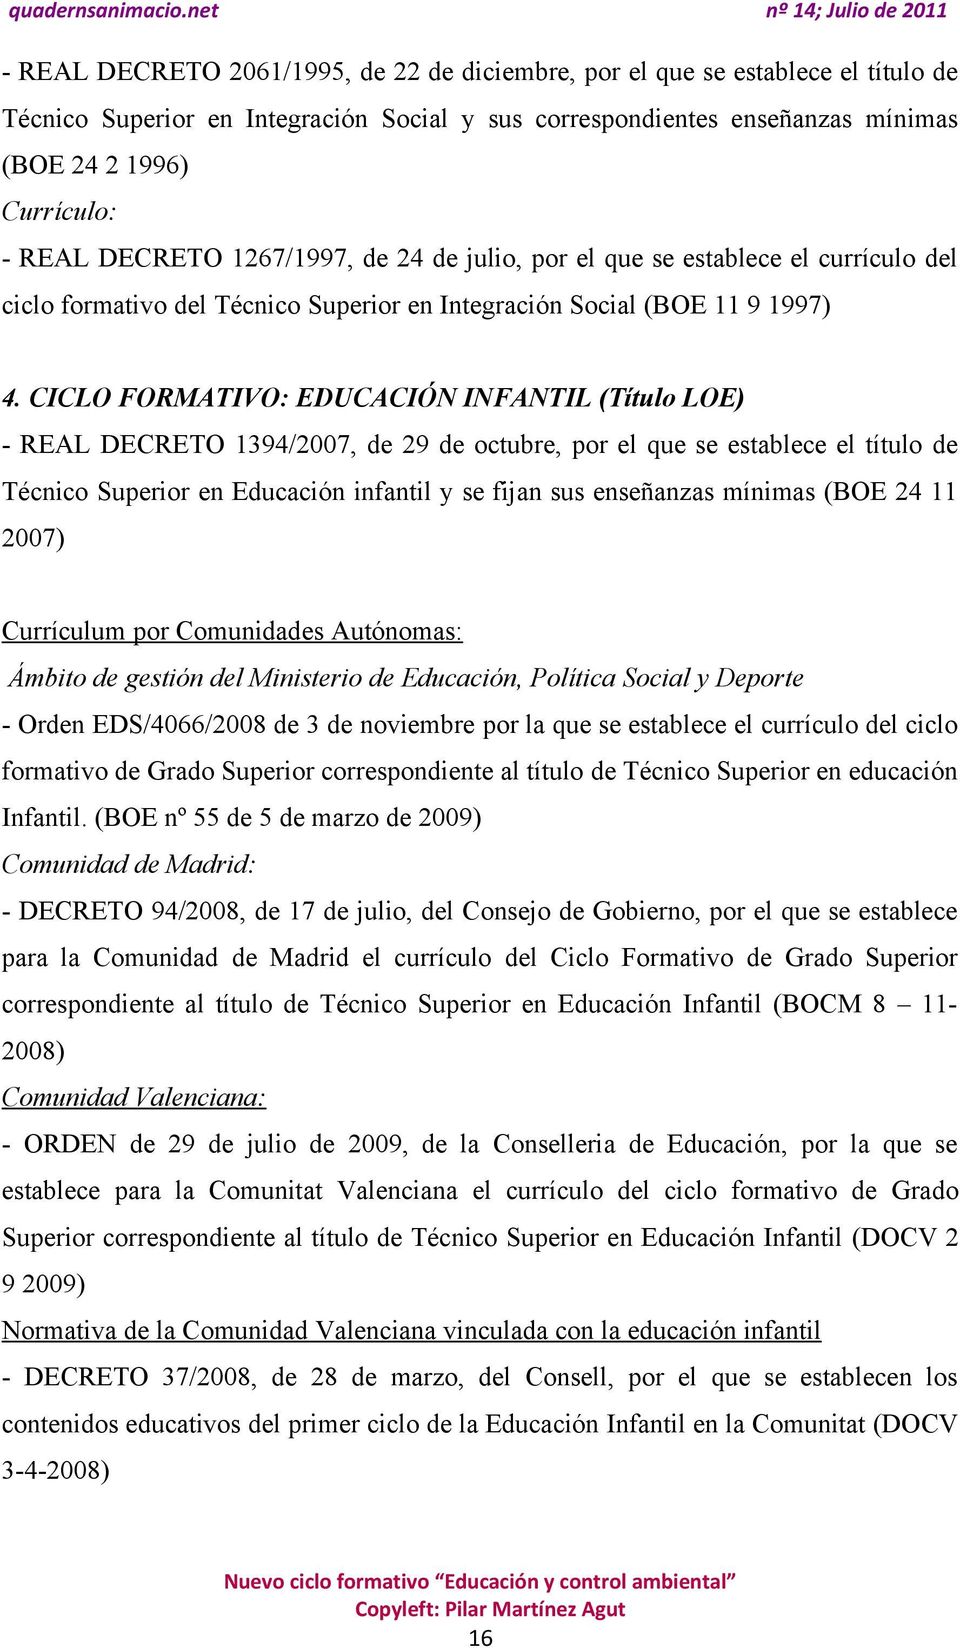 CICLO FORMATIVO: EDUCACIÓN INFANTIL (Título LOE) - REAL DECRETO 1394/2007, de 29 de octubre, por el que se establece el título de Técnico Superior en Educación infantil y se fijan sus enseñanzas